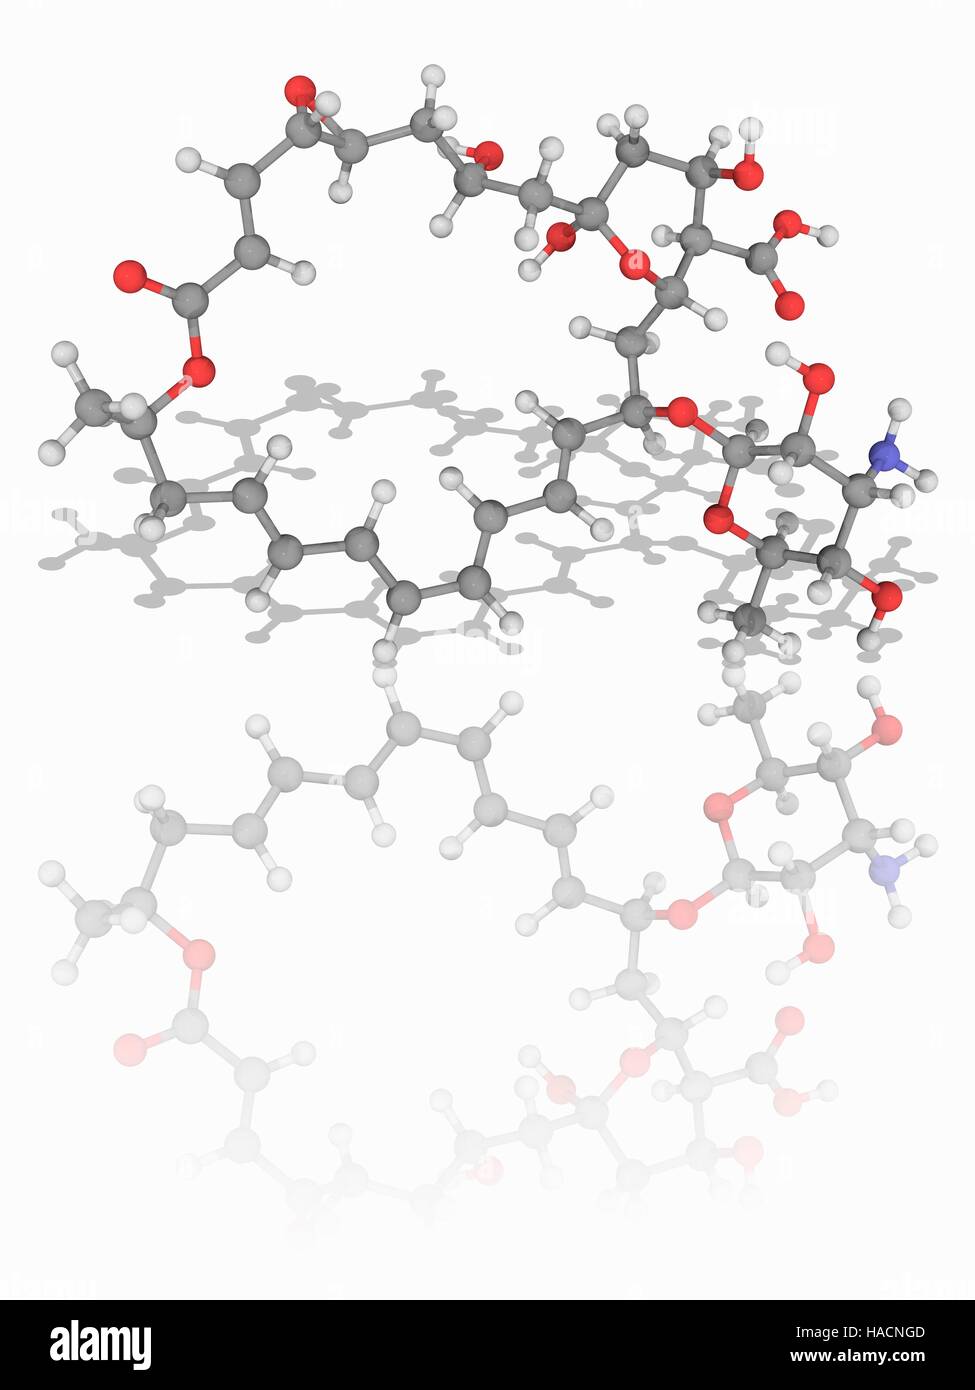 Natamycin. Molekulares Modell des chemischen Natamycin (C33. H47. N.O13),  auch bekannt als Pimaricin. Dies ist ein natürlich vorkommendes  Anti-Pilz-Agent durch das Bakterium Streptomyces Natalensis produziert. Es  wird in der Lebensmittelindustrie, Pilz ...